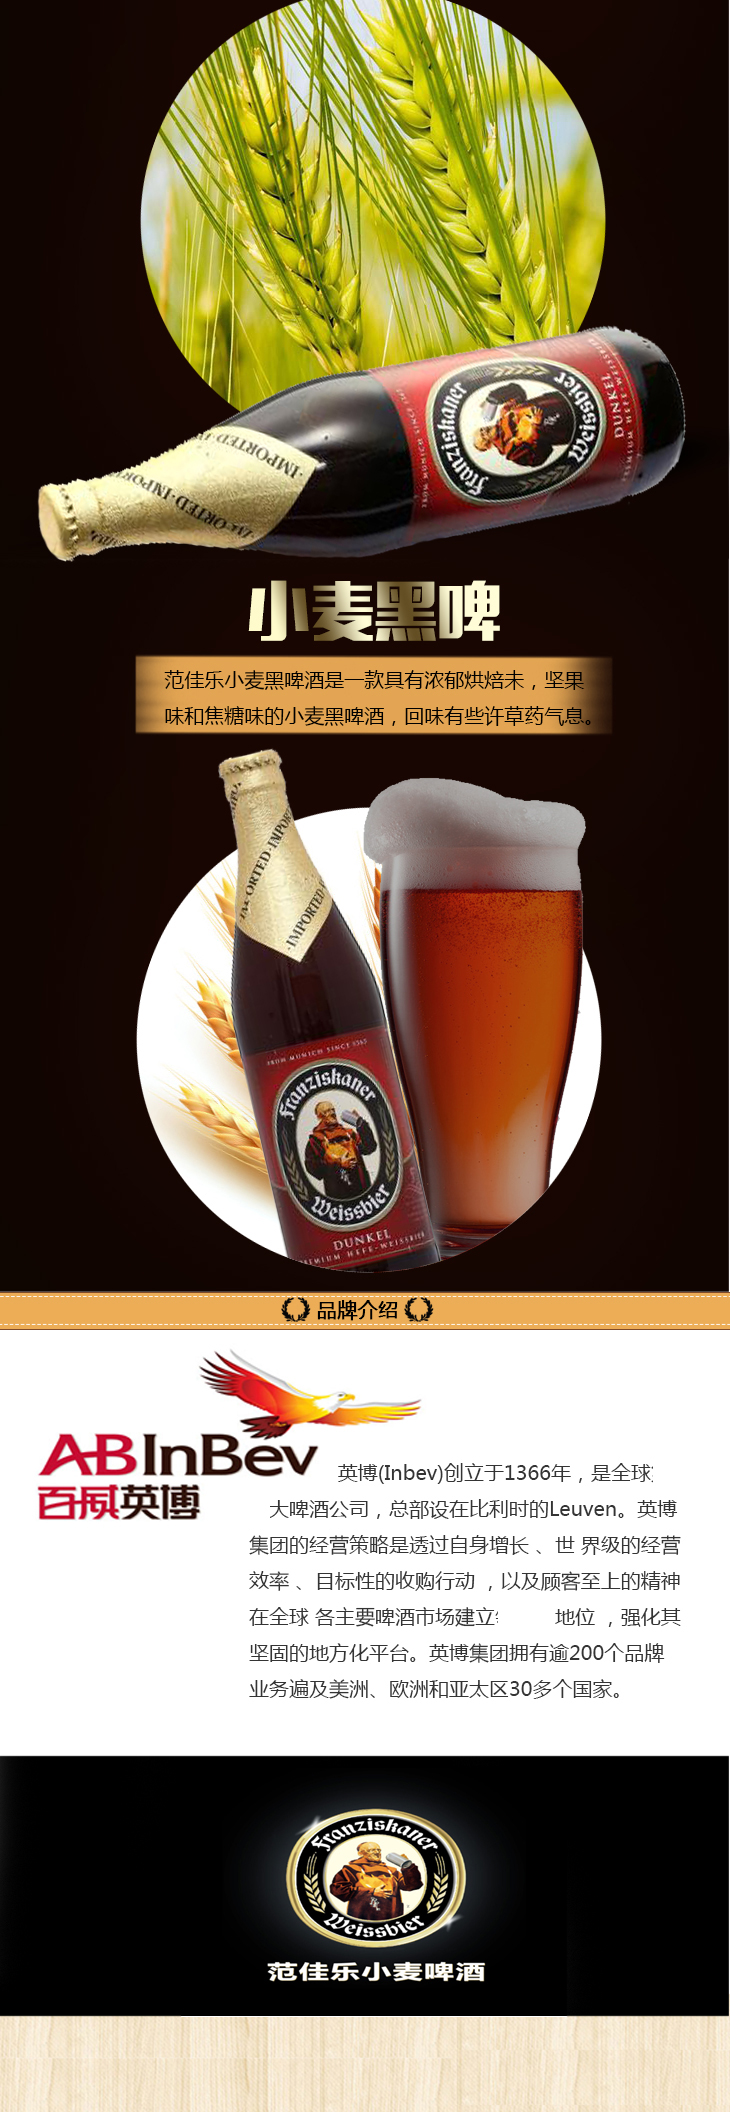 【中粮海外优选】德国范佳乐(又名教士)小麦黑啤酒 (瓶装 500ml)10支